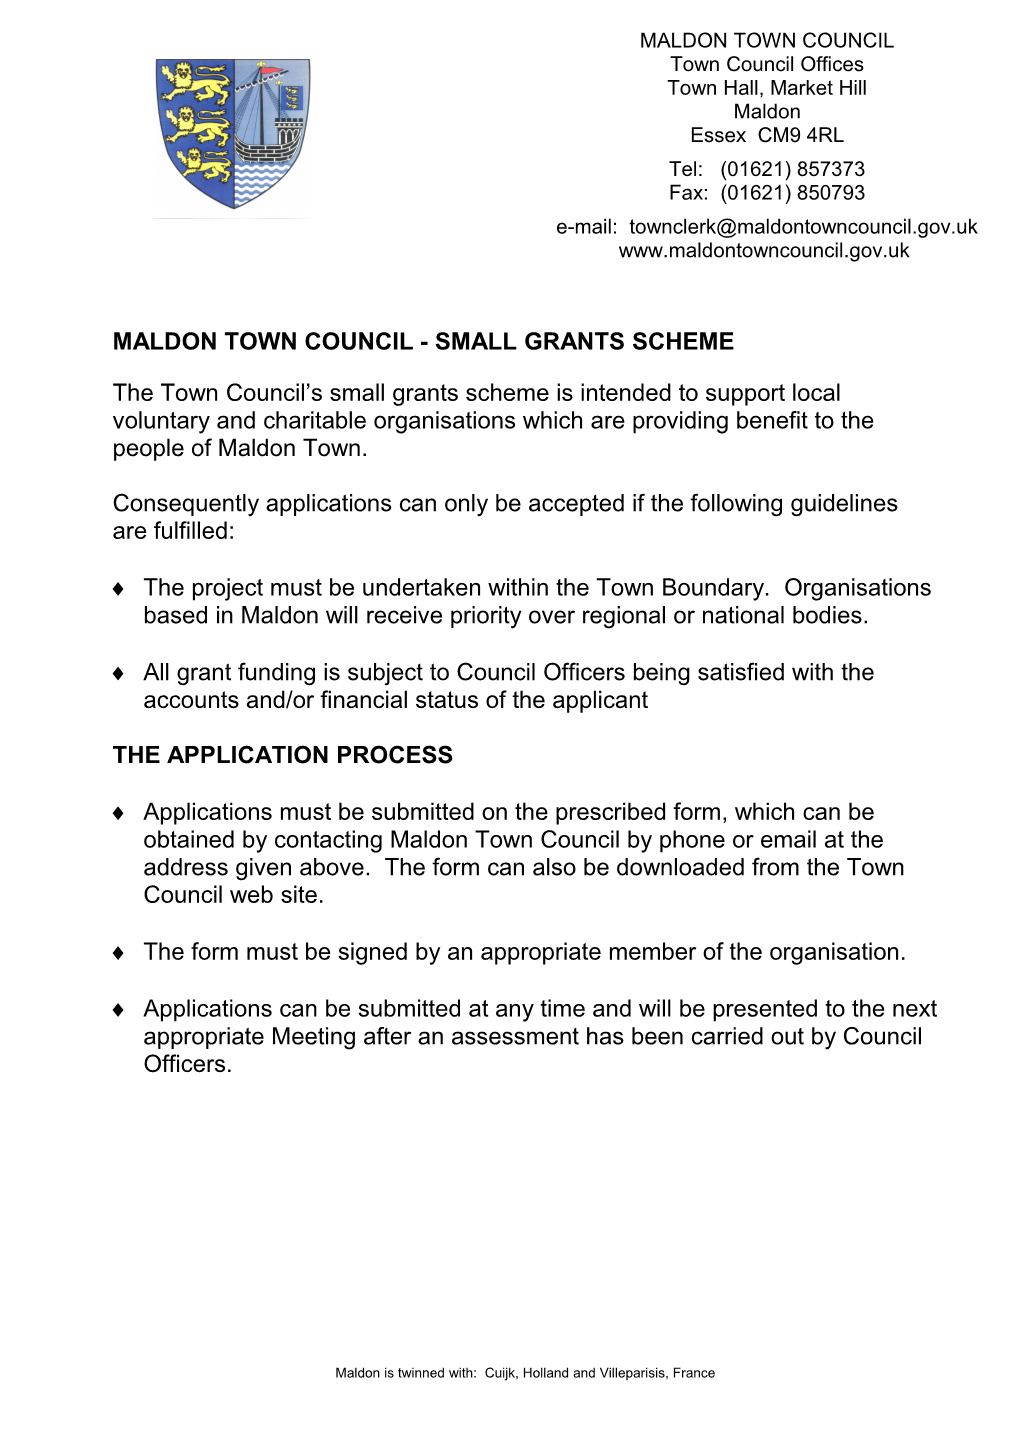 Maldon Town Council - Small Grants Scheme